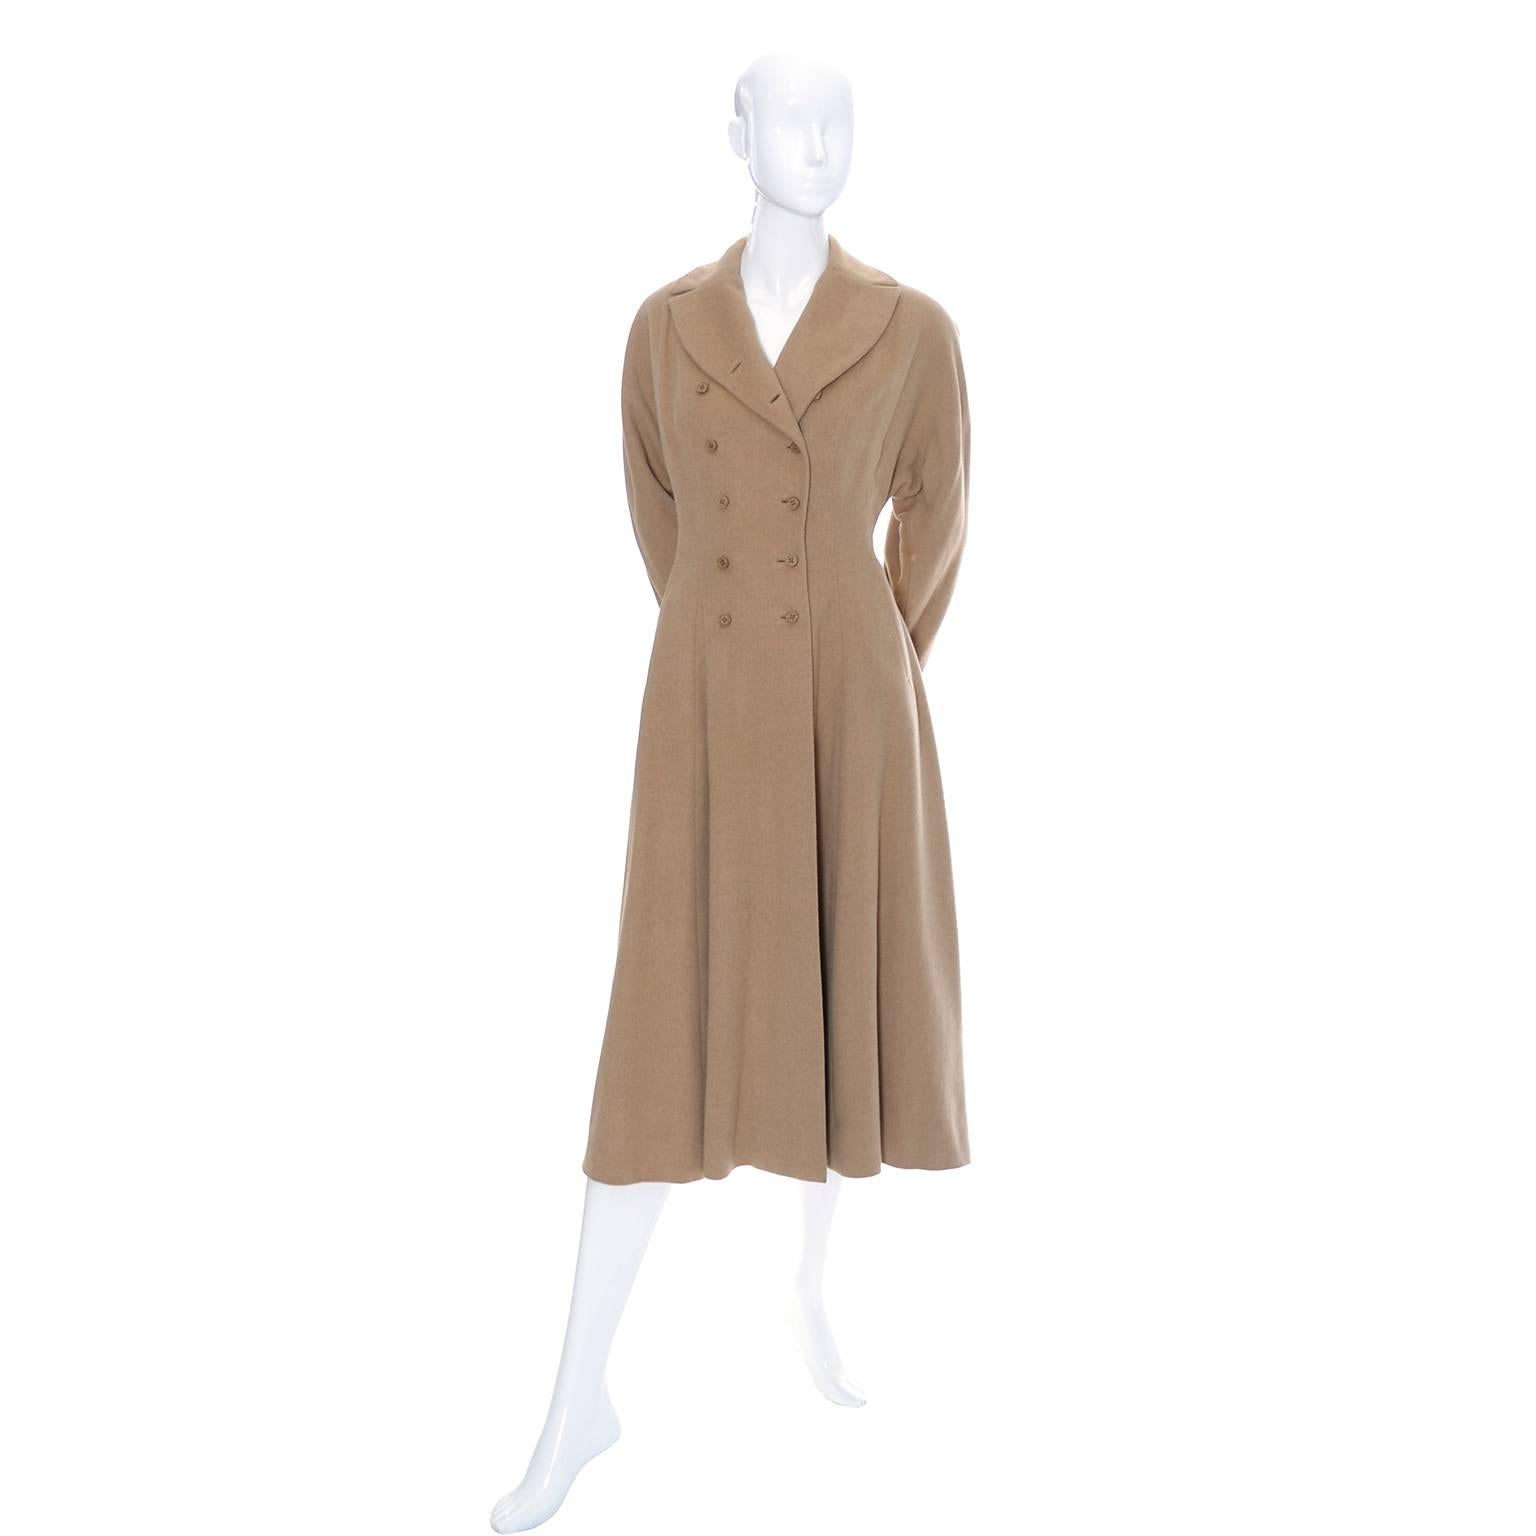 1940s style coat